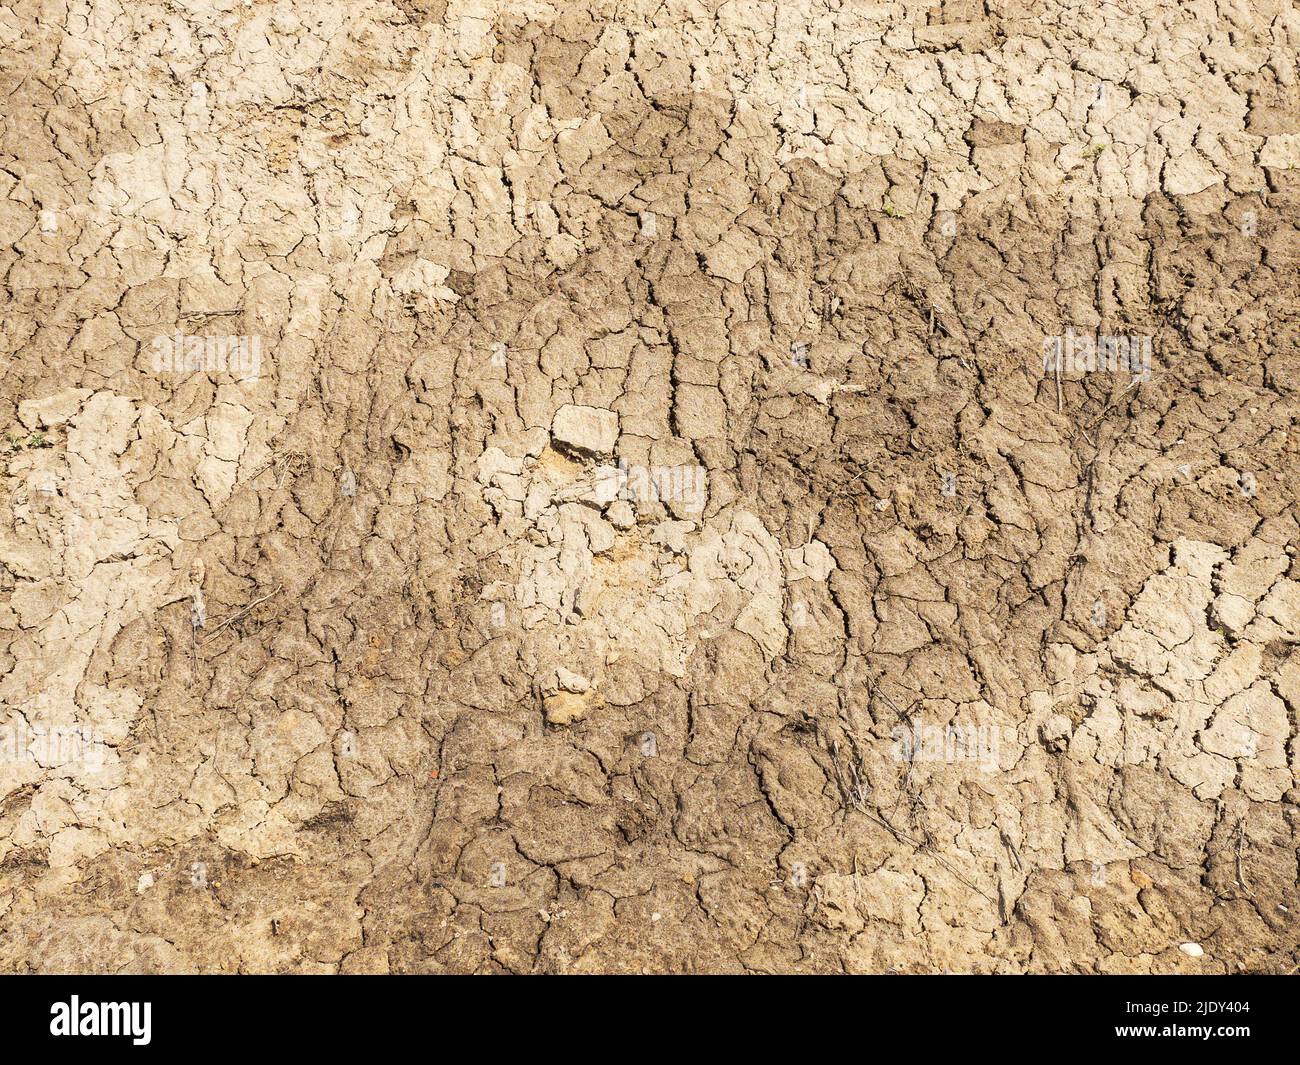 tierra agrietada. tierra de sequía. textura de arena. Foto de stock